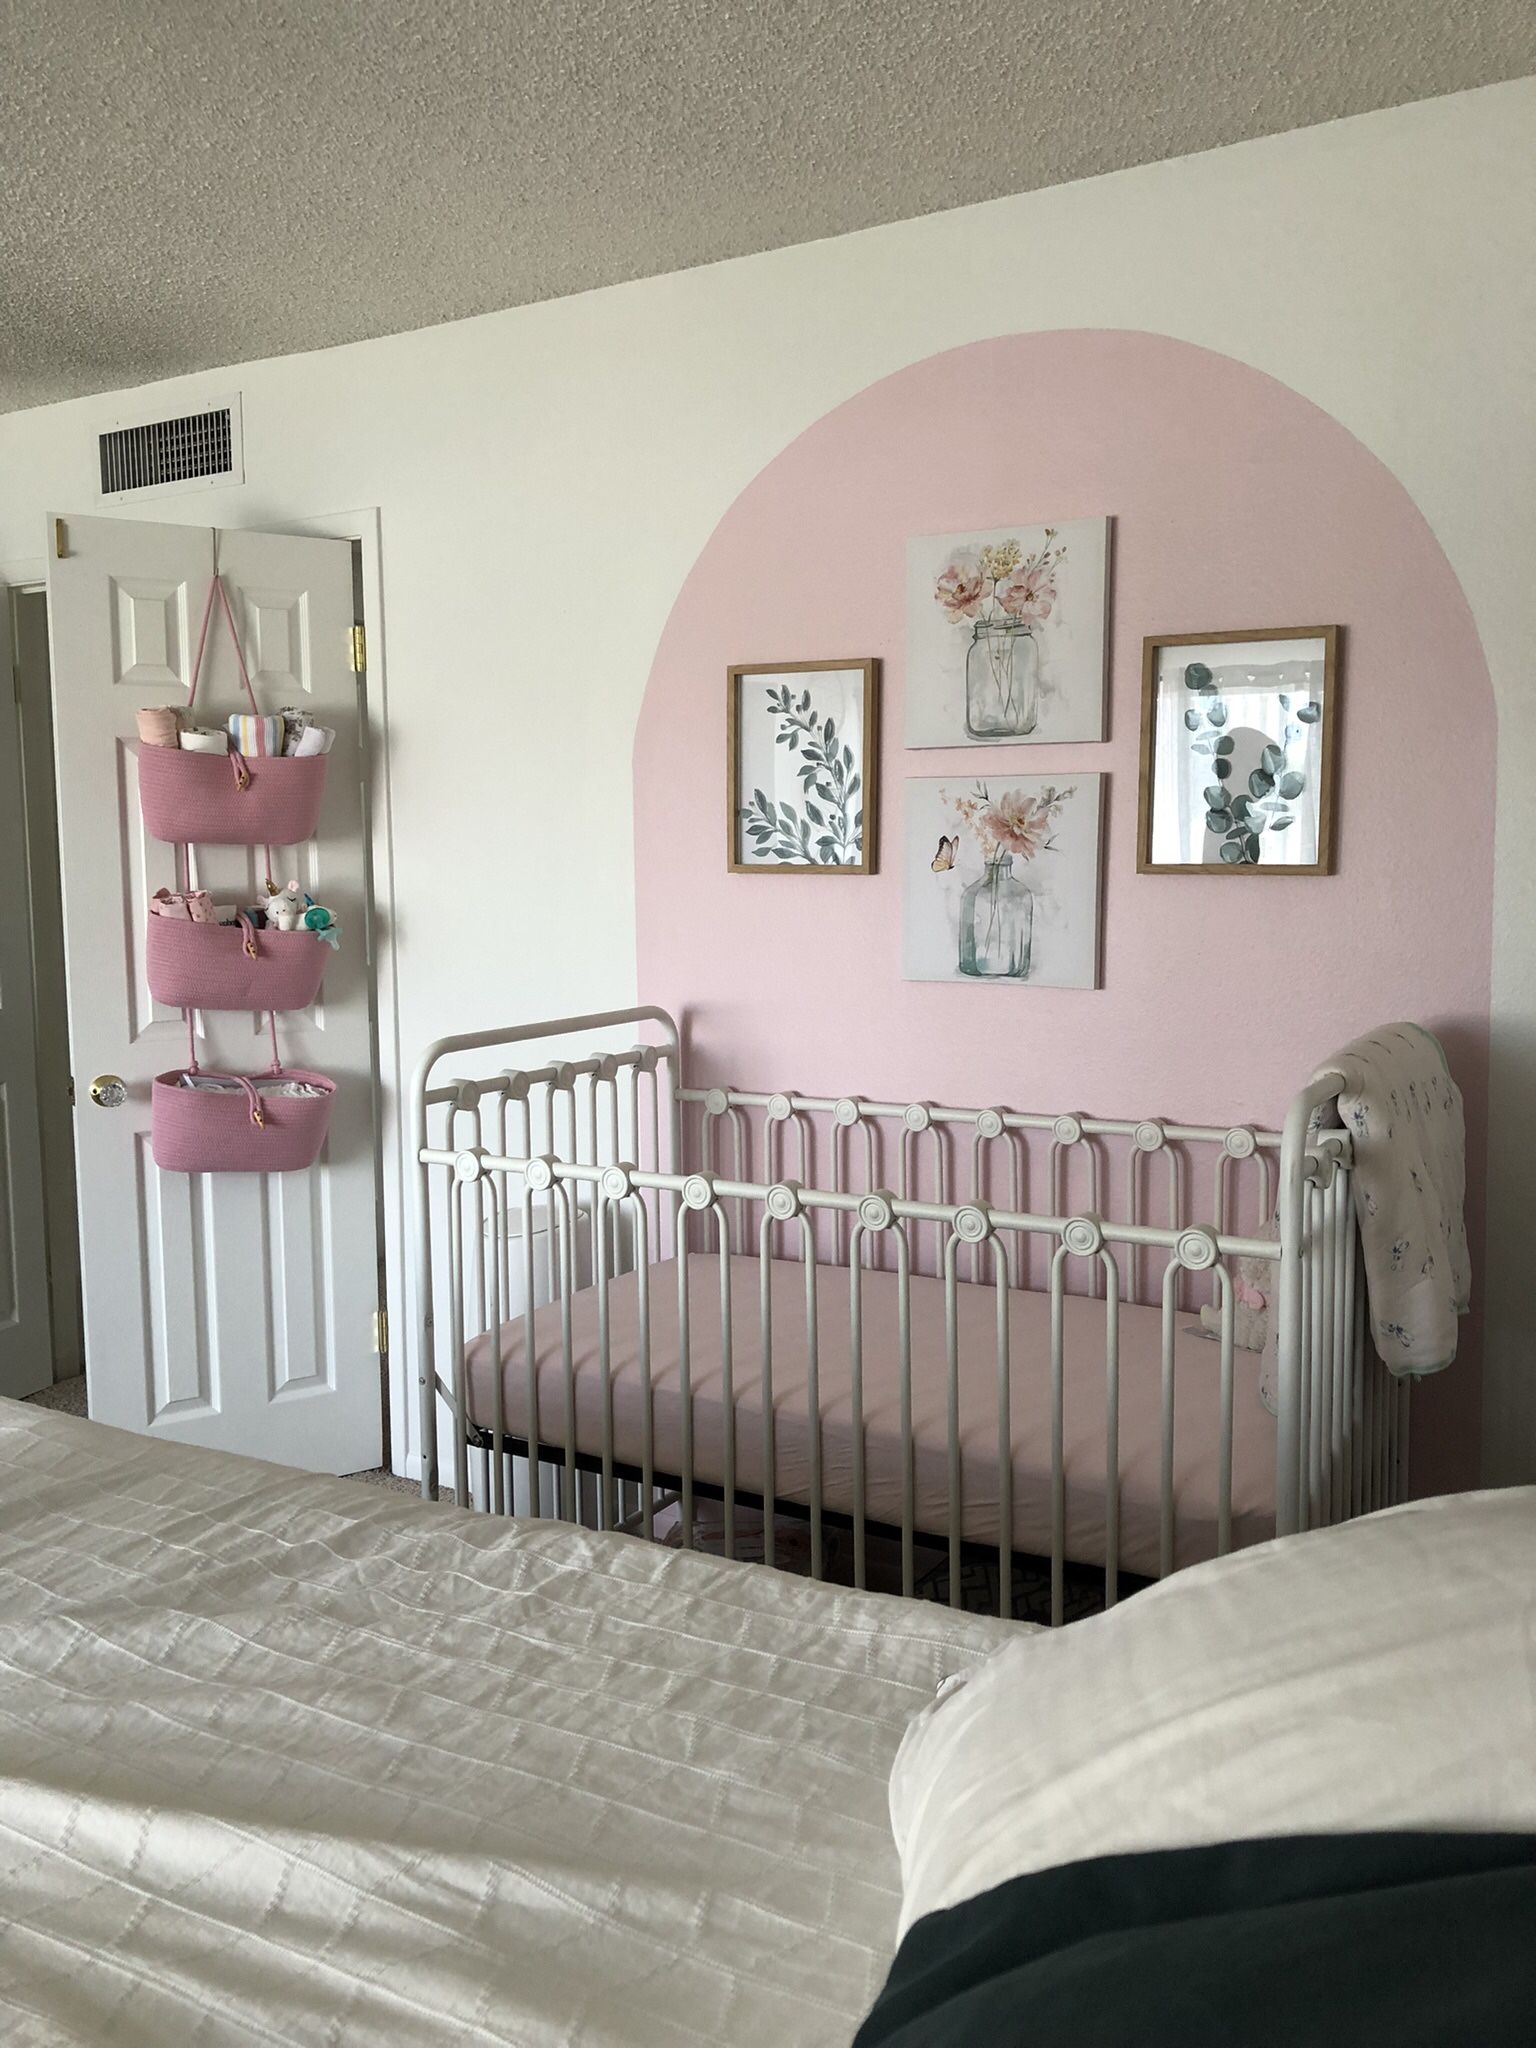 White Metal Baby Crib